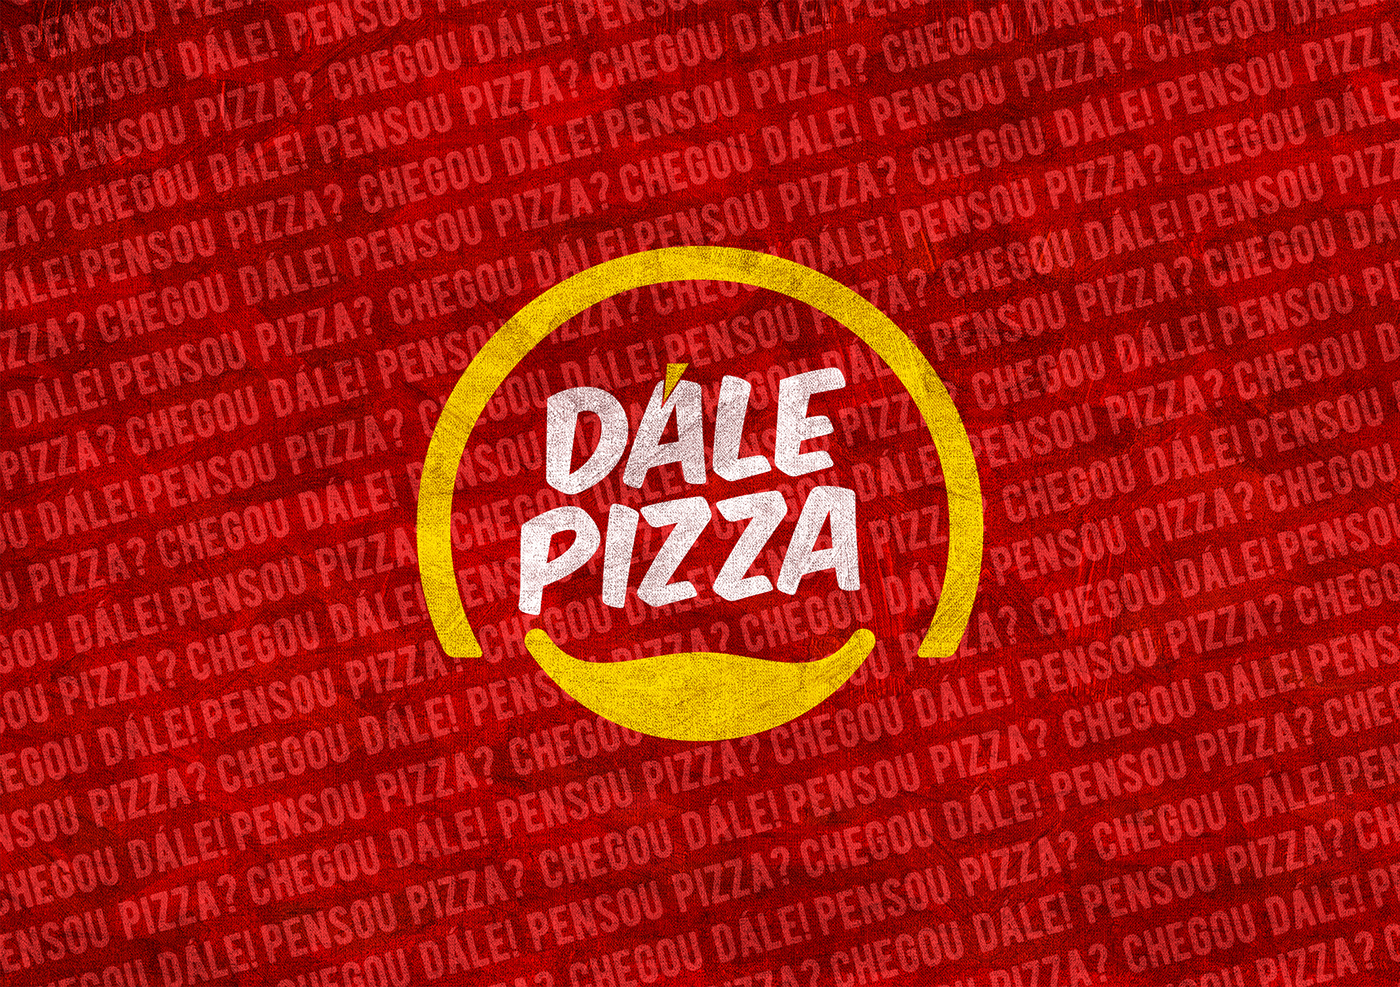 Pizza pizzaria naming marca estudo posicionamento PDV Inauguração. brand Dále Pizza Marca Pizza alimento identidade visual